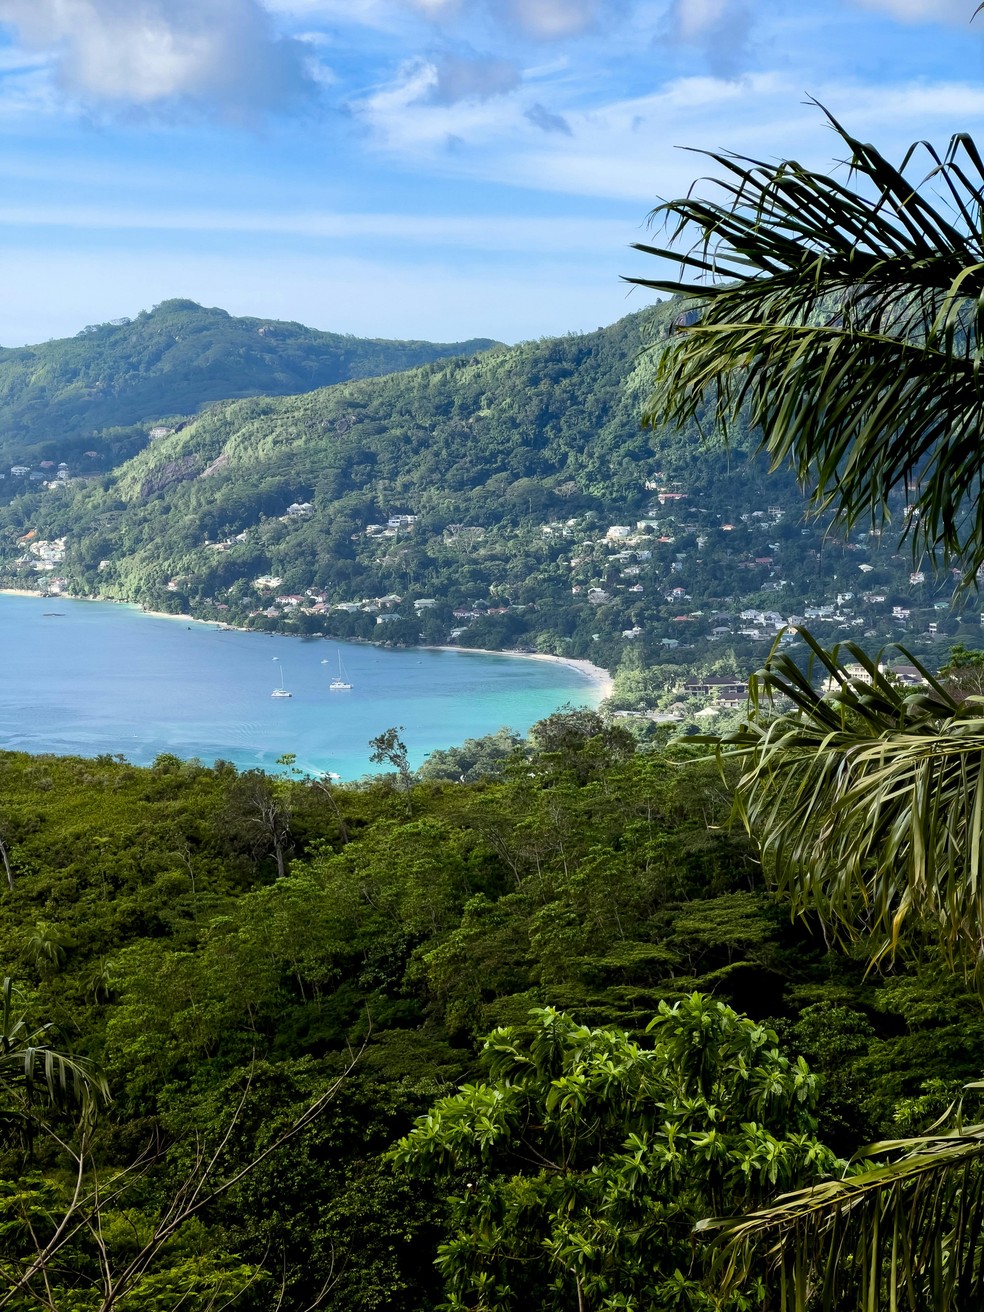 Seychelles é um arquipélago no Oceano Índico, parte da África — Foto: Pexels/Foto de Matteo Parisi